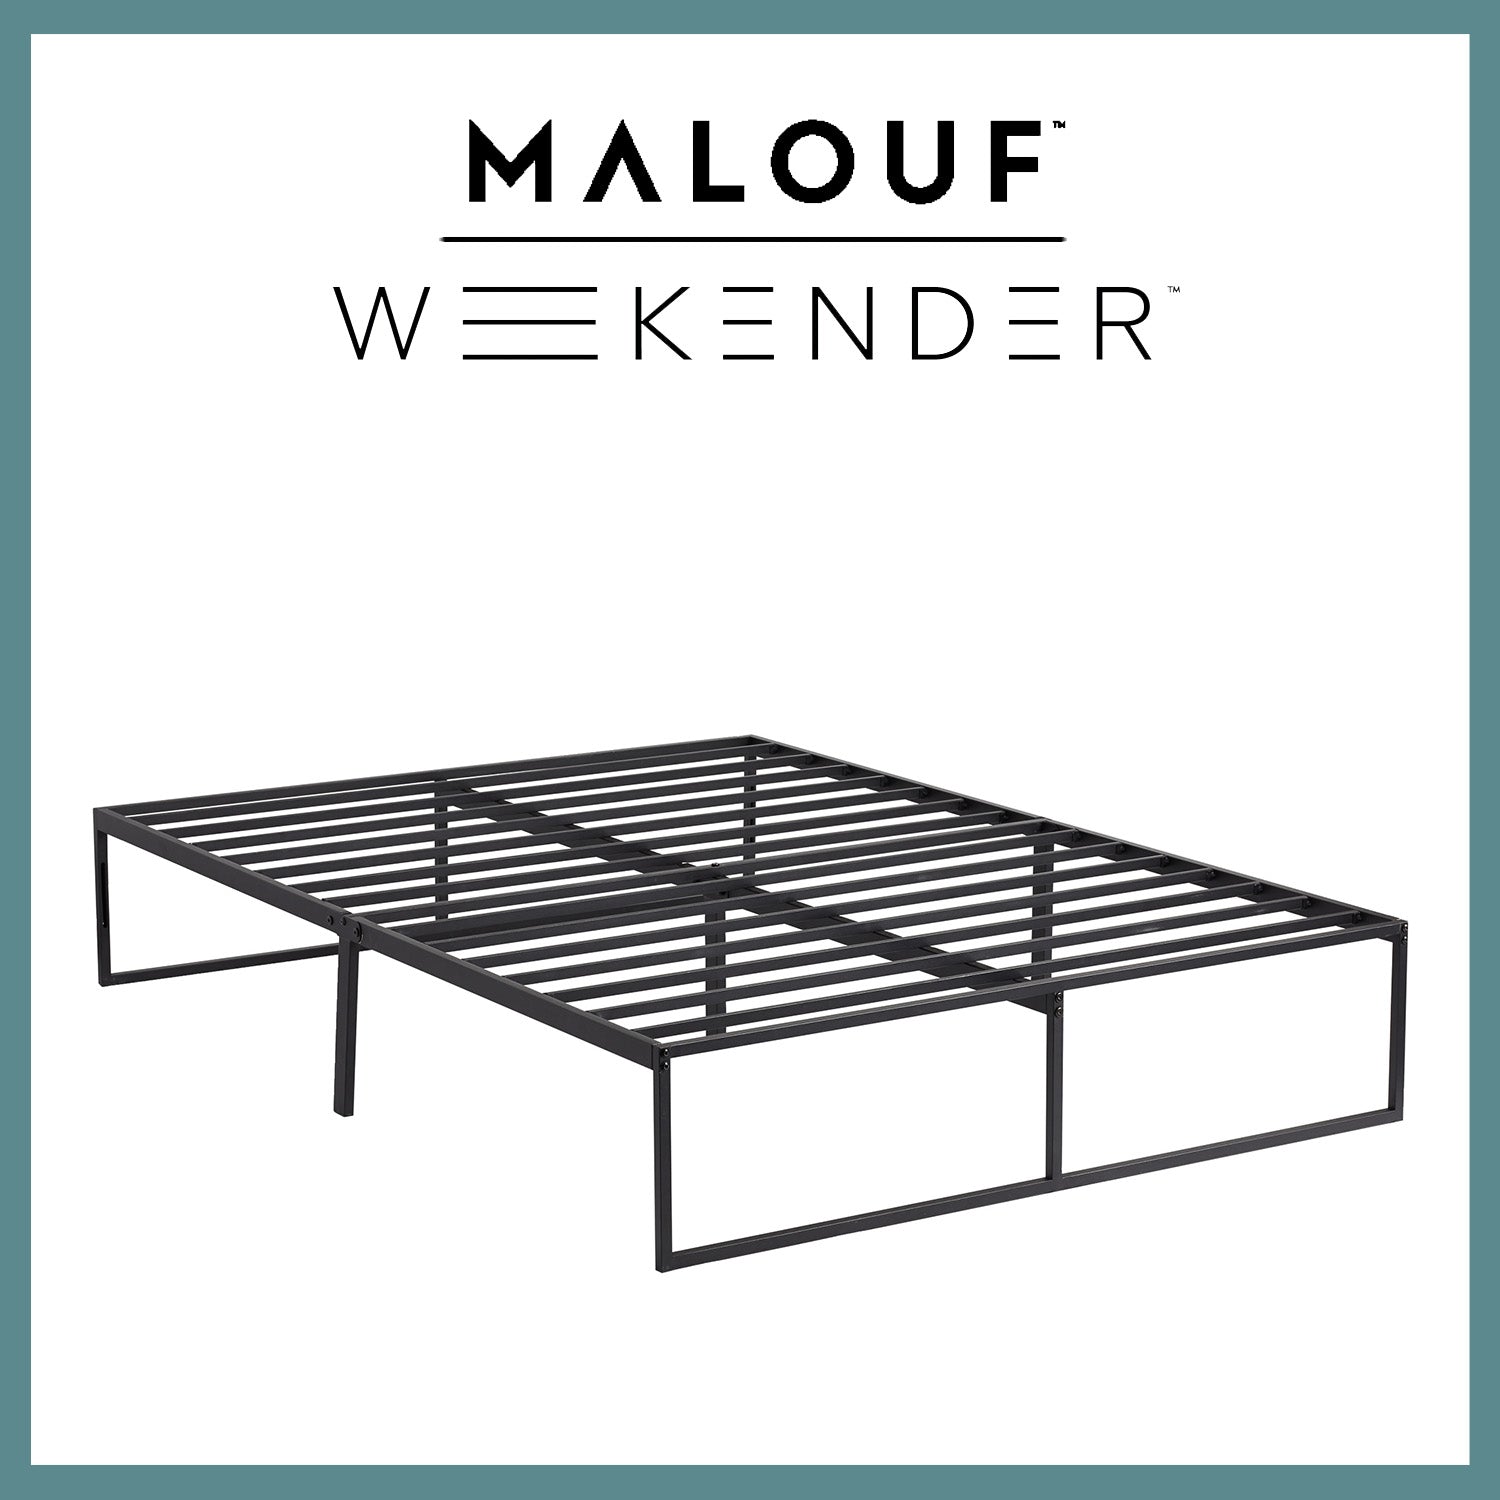 Weekender Modern Platform Bed Frame